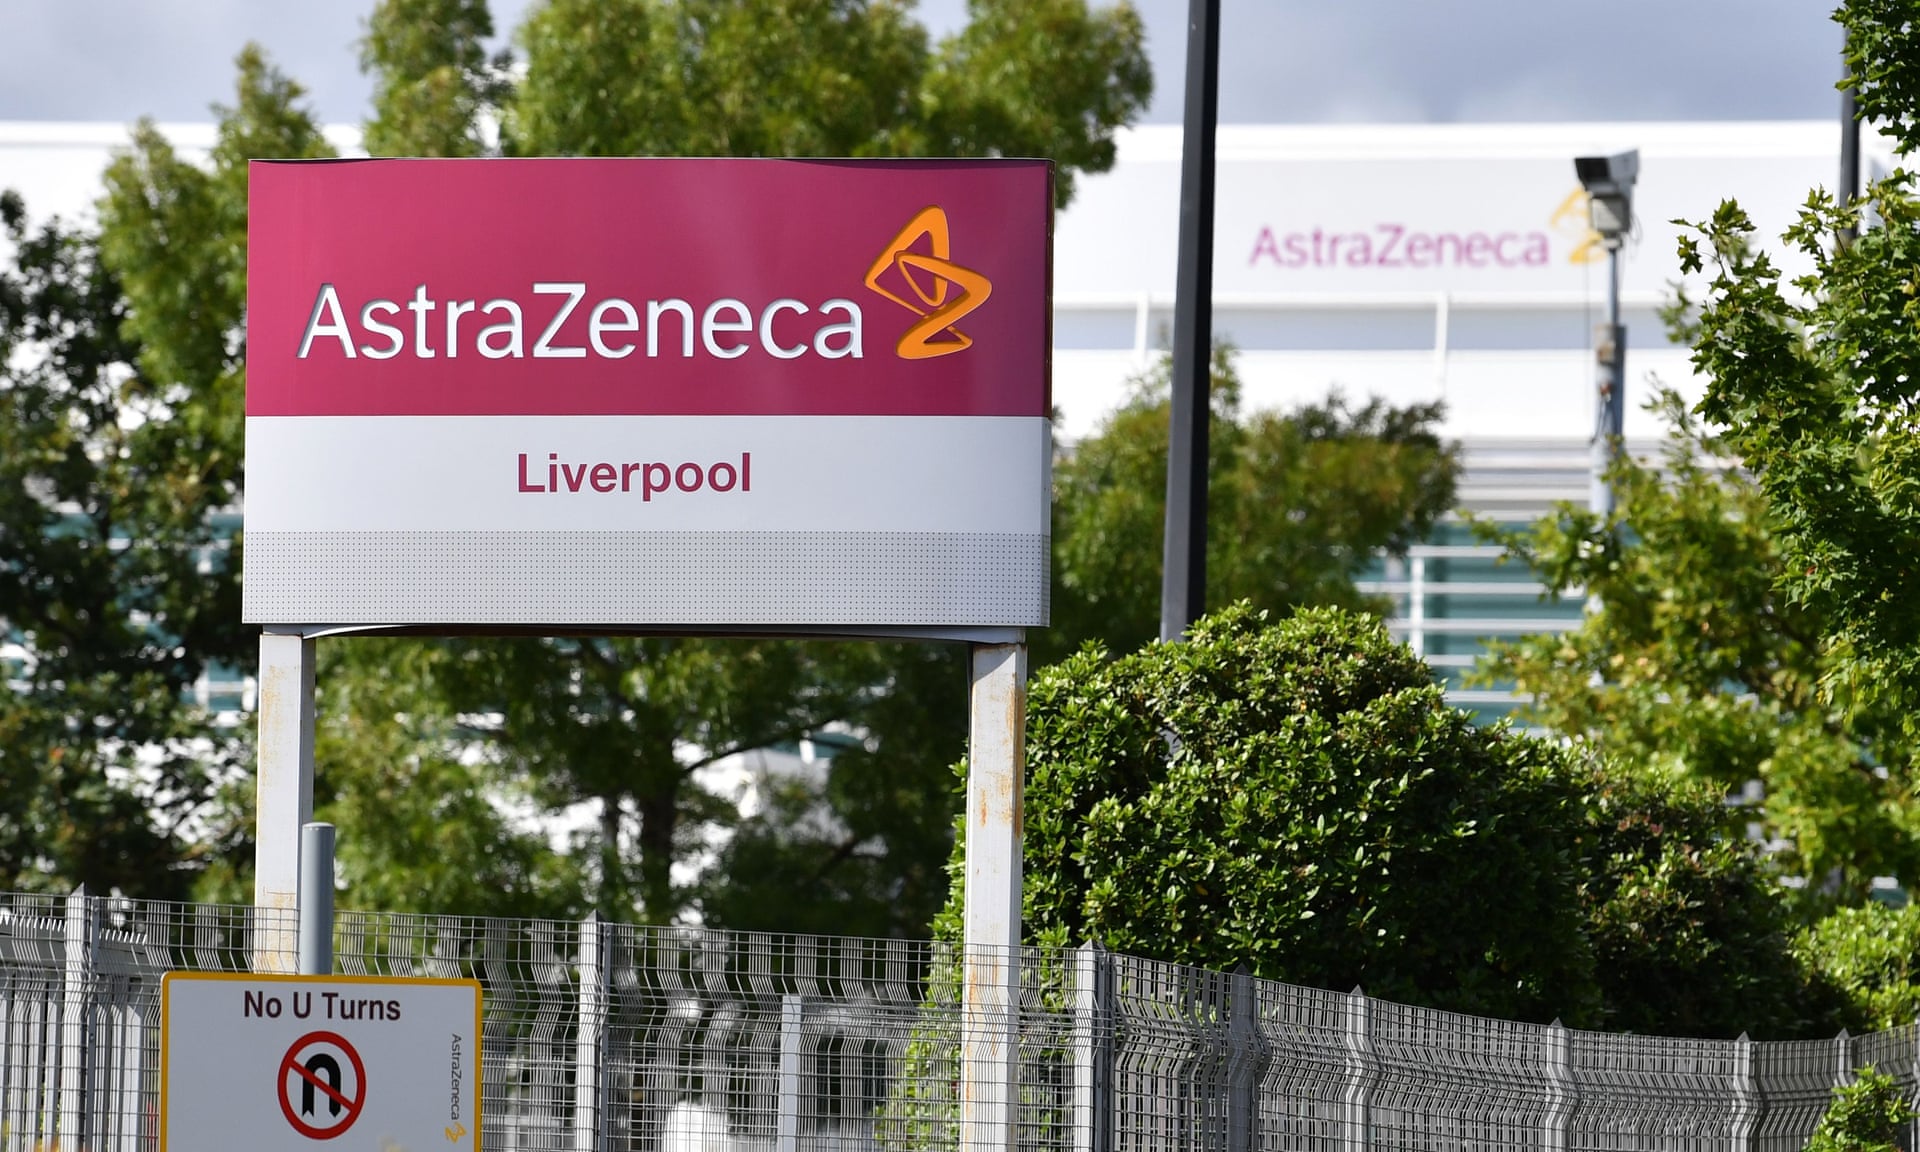 Trajtimi për kancer: Kompania AstraZeneca nënshkruan marrëveshje 4,7 miliardëshe